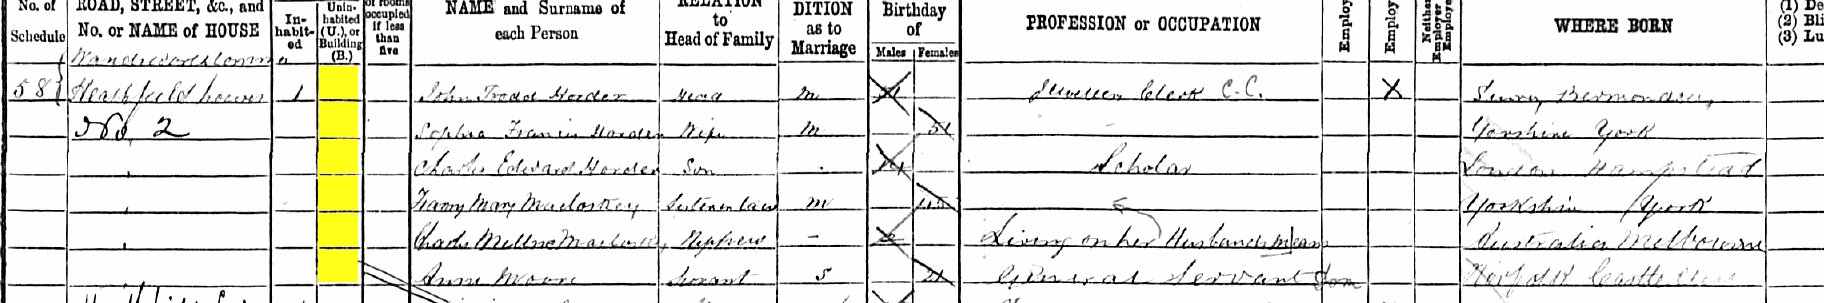 John Trodd Horder 1891 census returns, clearer